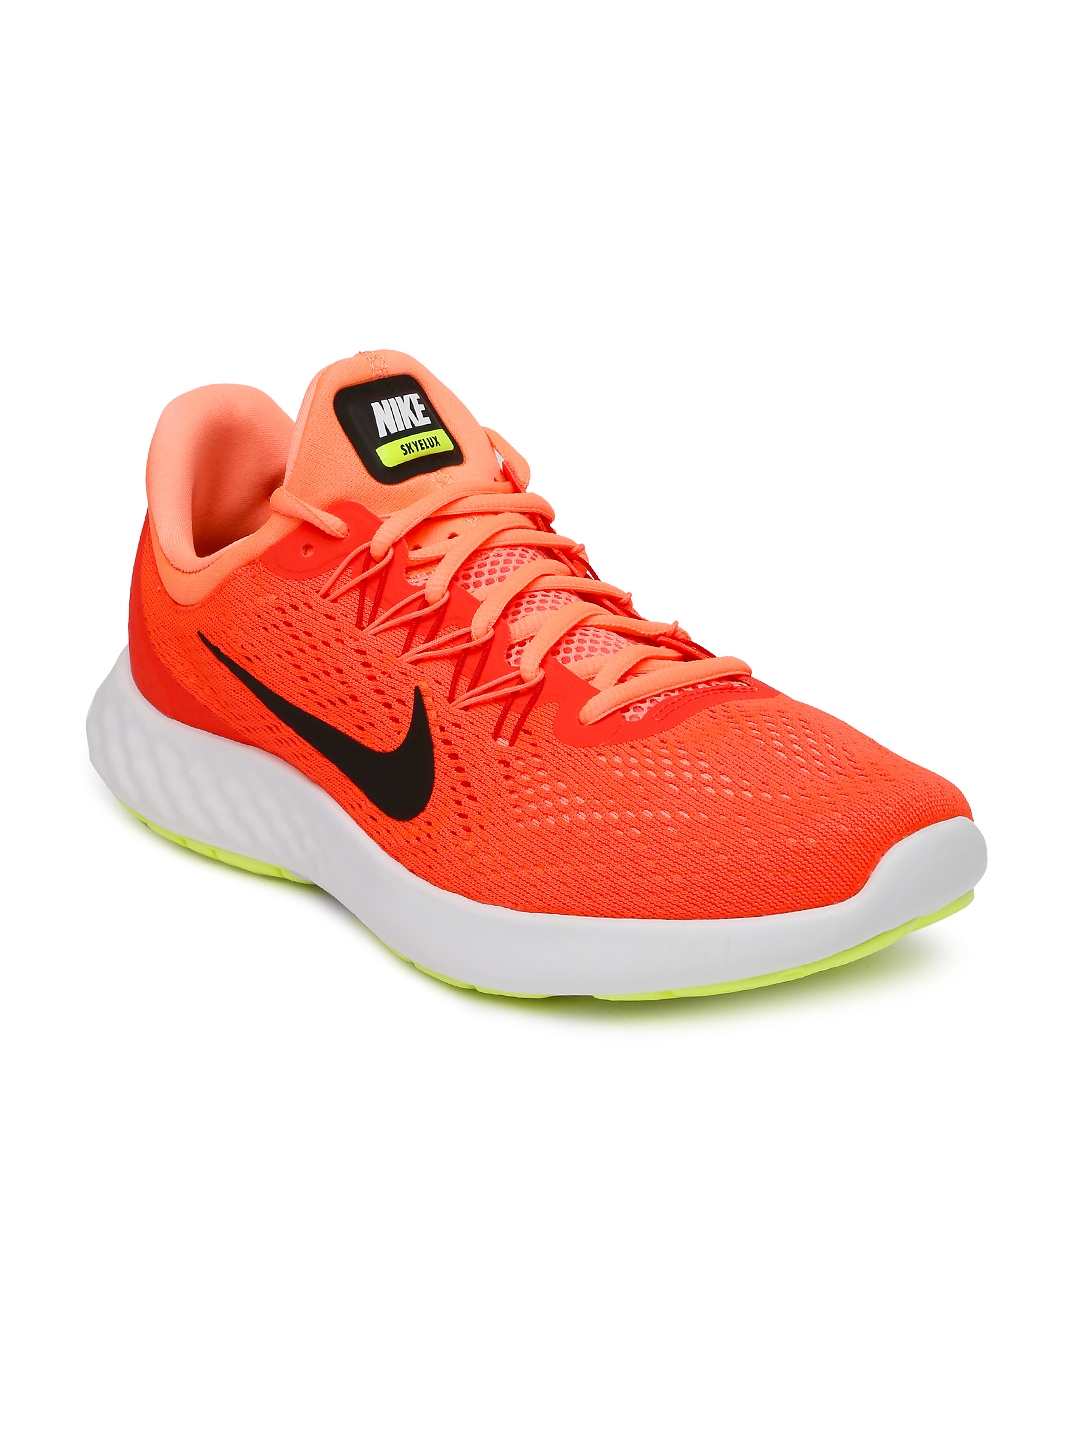 nike neon orange running shoes